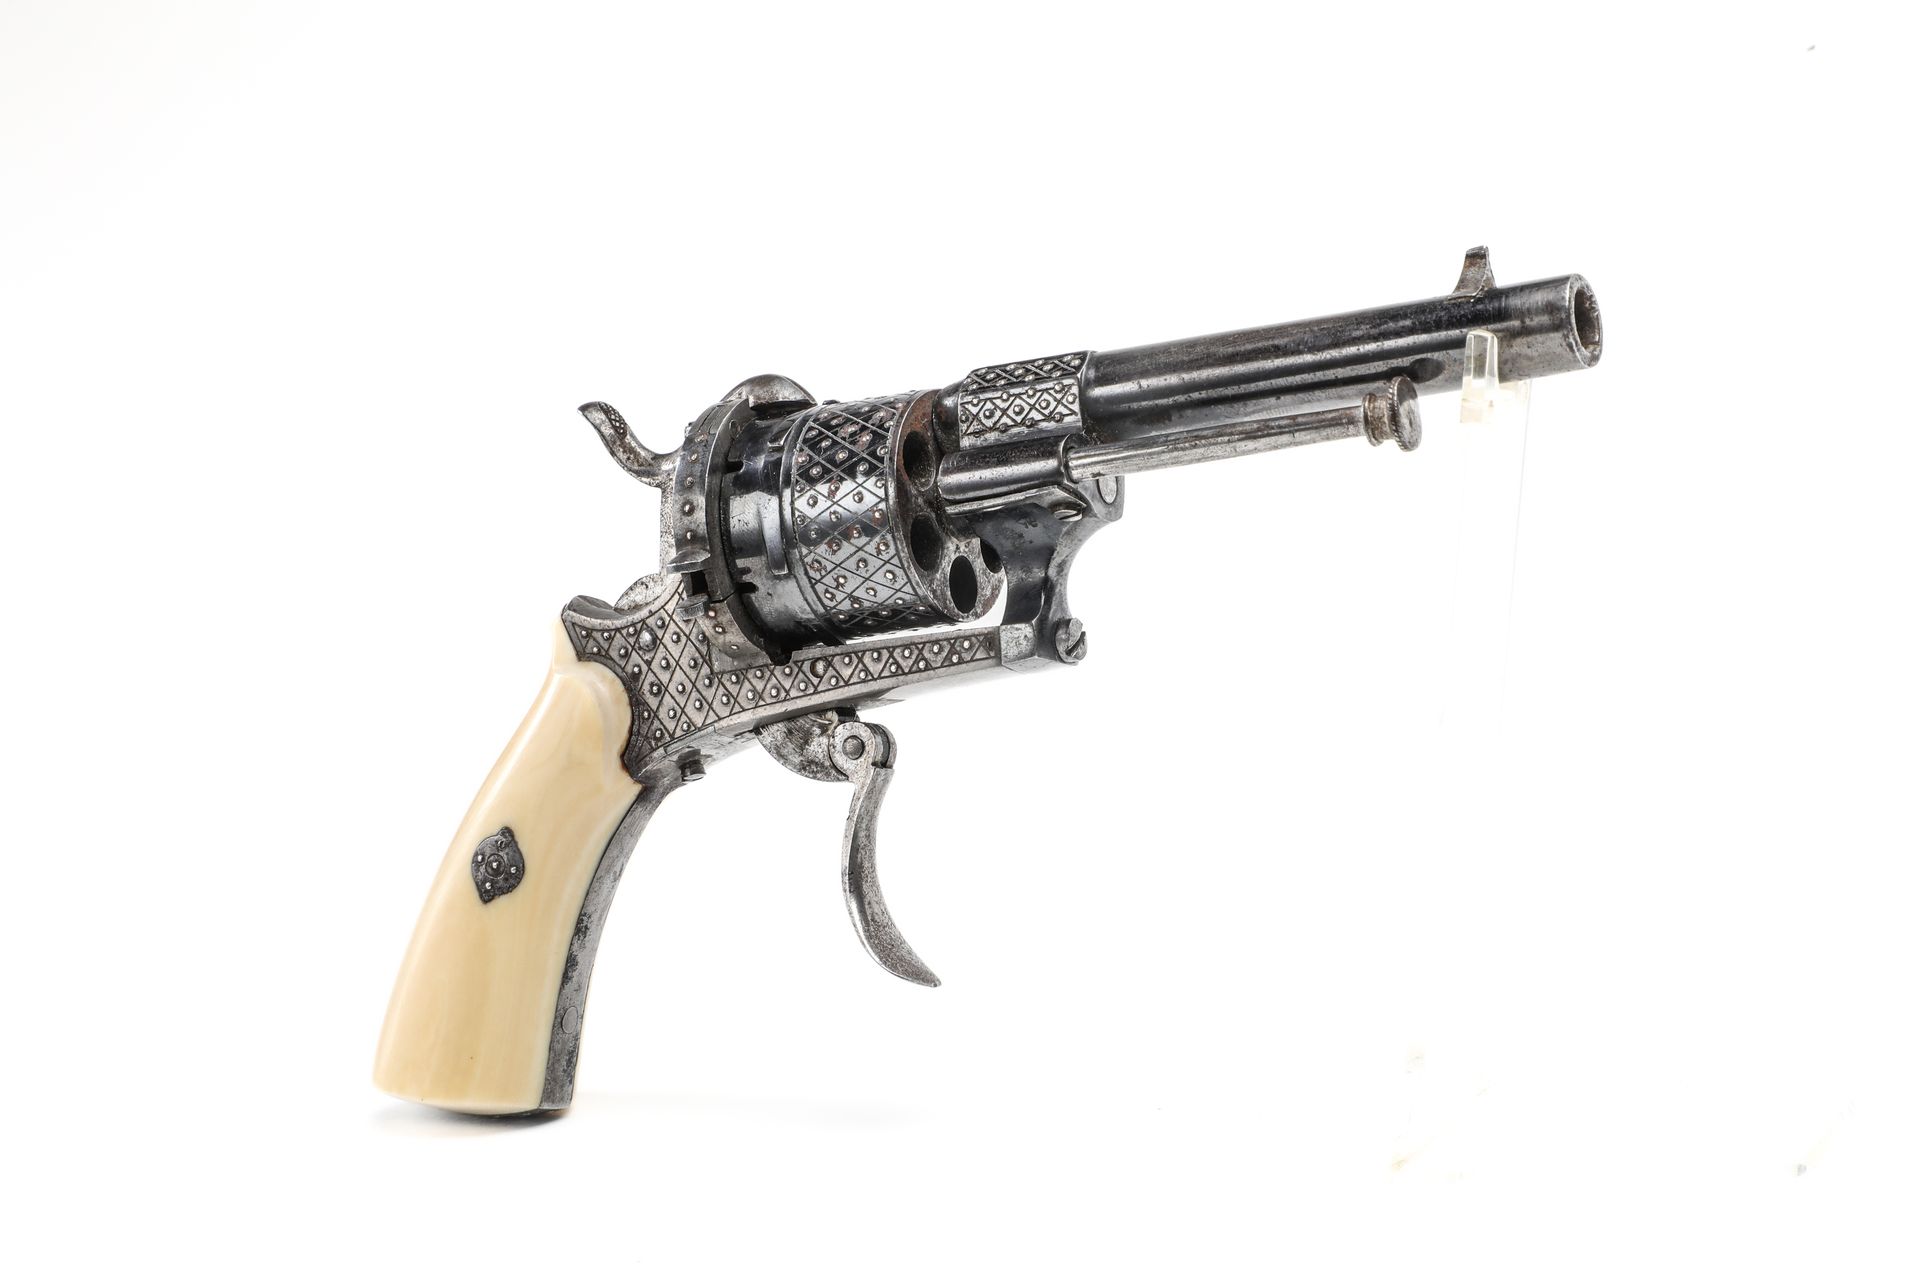 Null Luxus-Pin-Revolver, System LEFAUCHEUX.
Sechs Schuss, Kaliber 7 mm
Runder La&hellip;